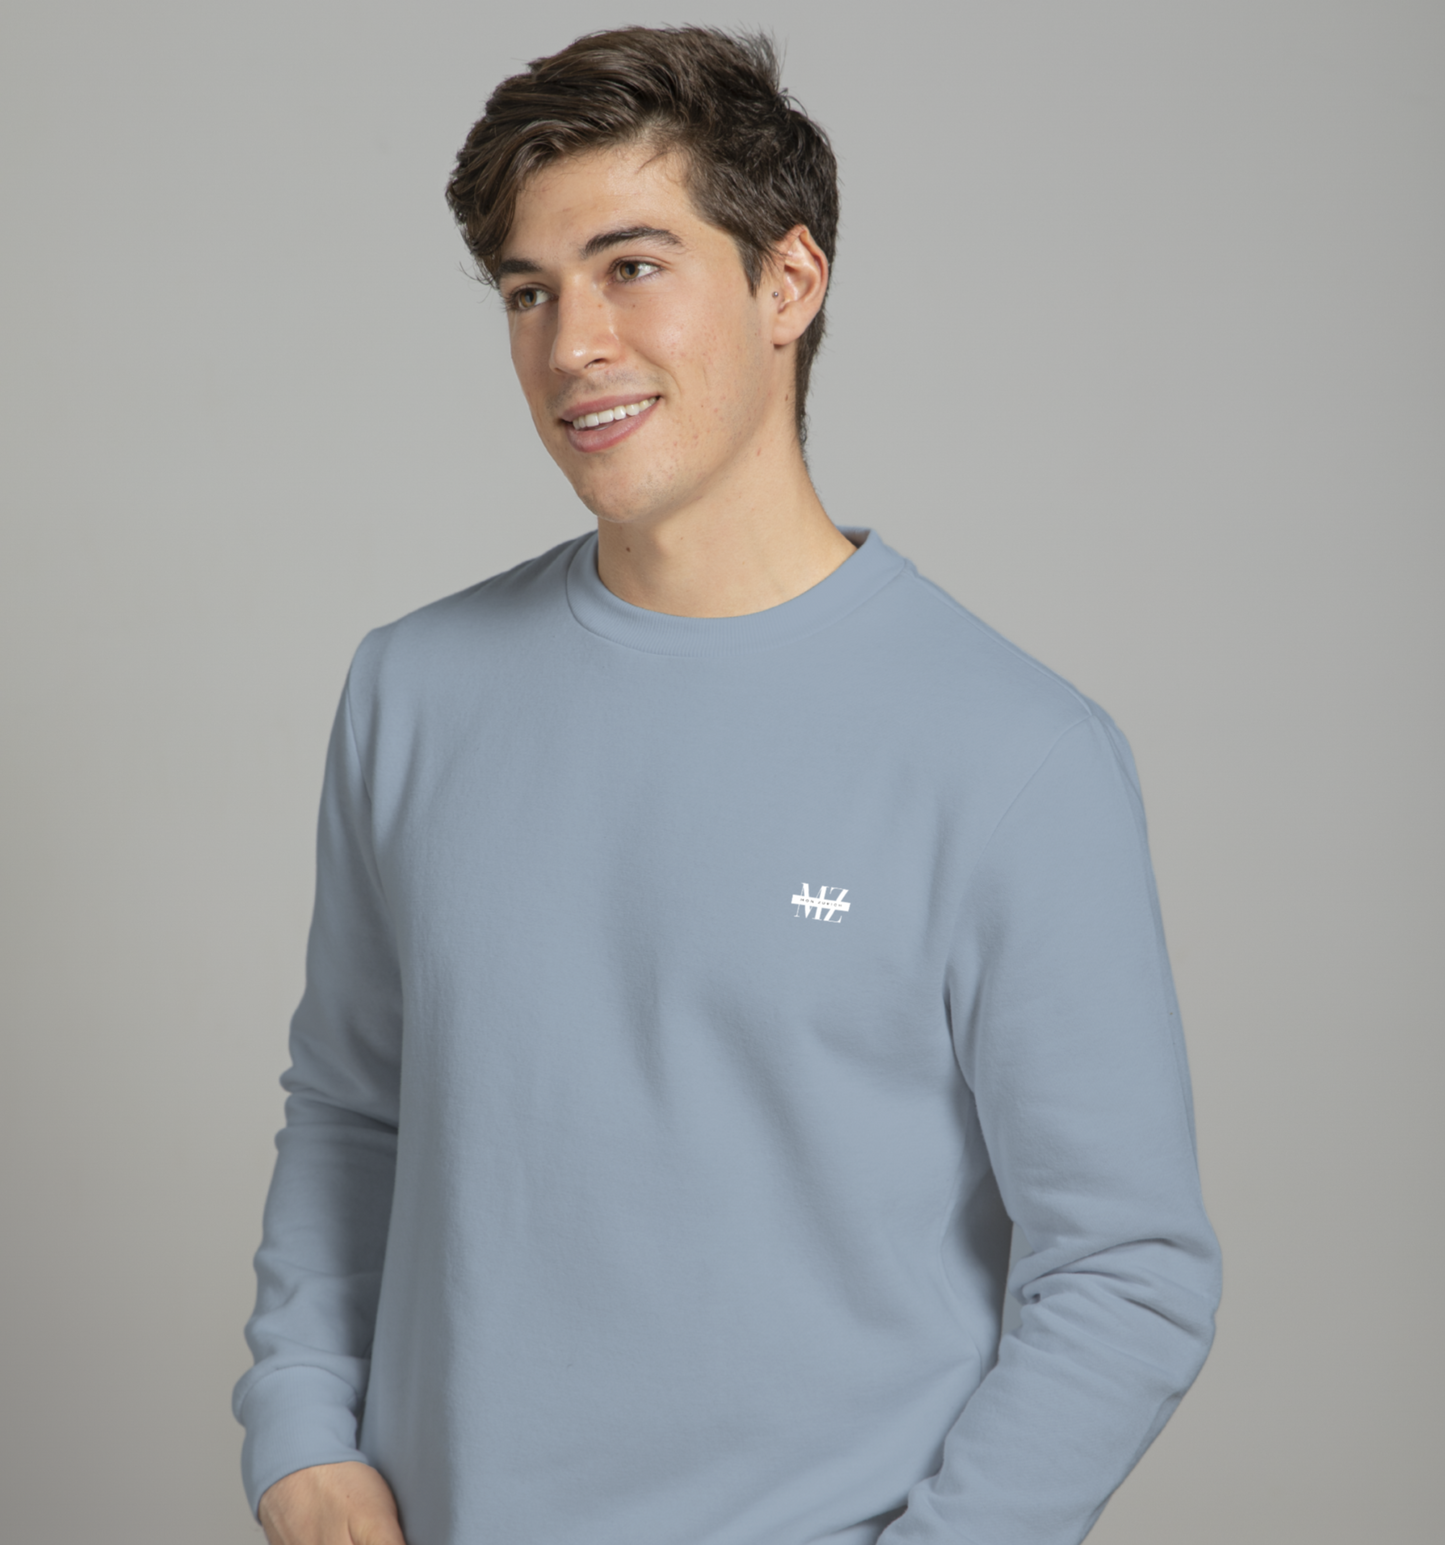 Dim Grey  Sweatshirt In Plain - Mon Zurich Originals